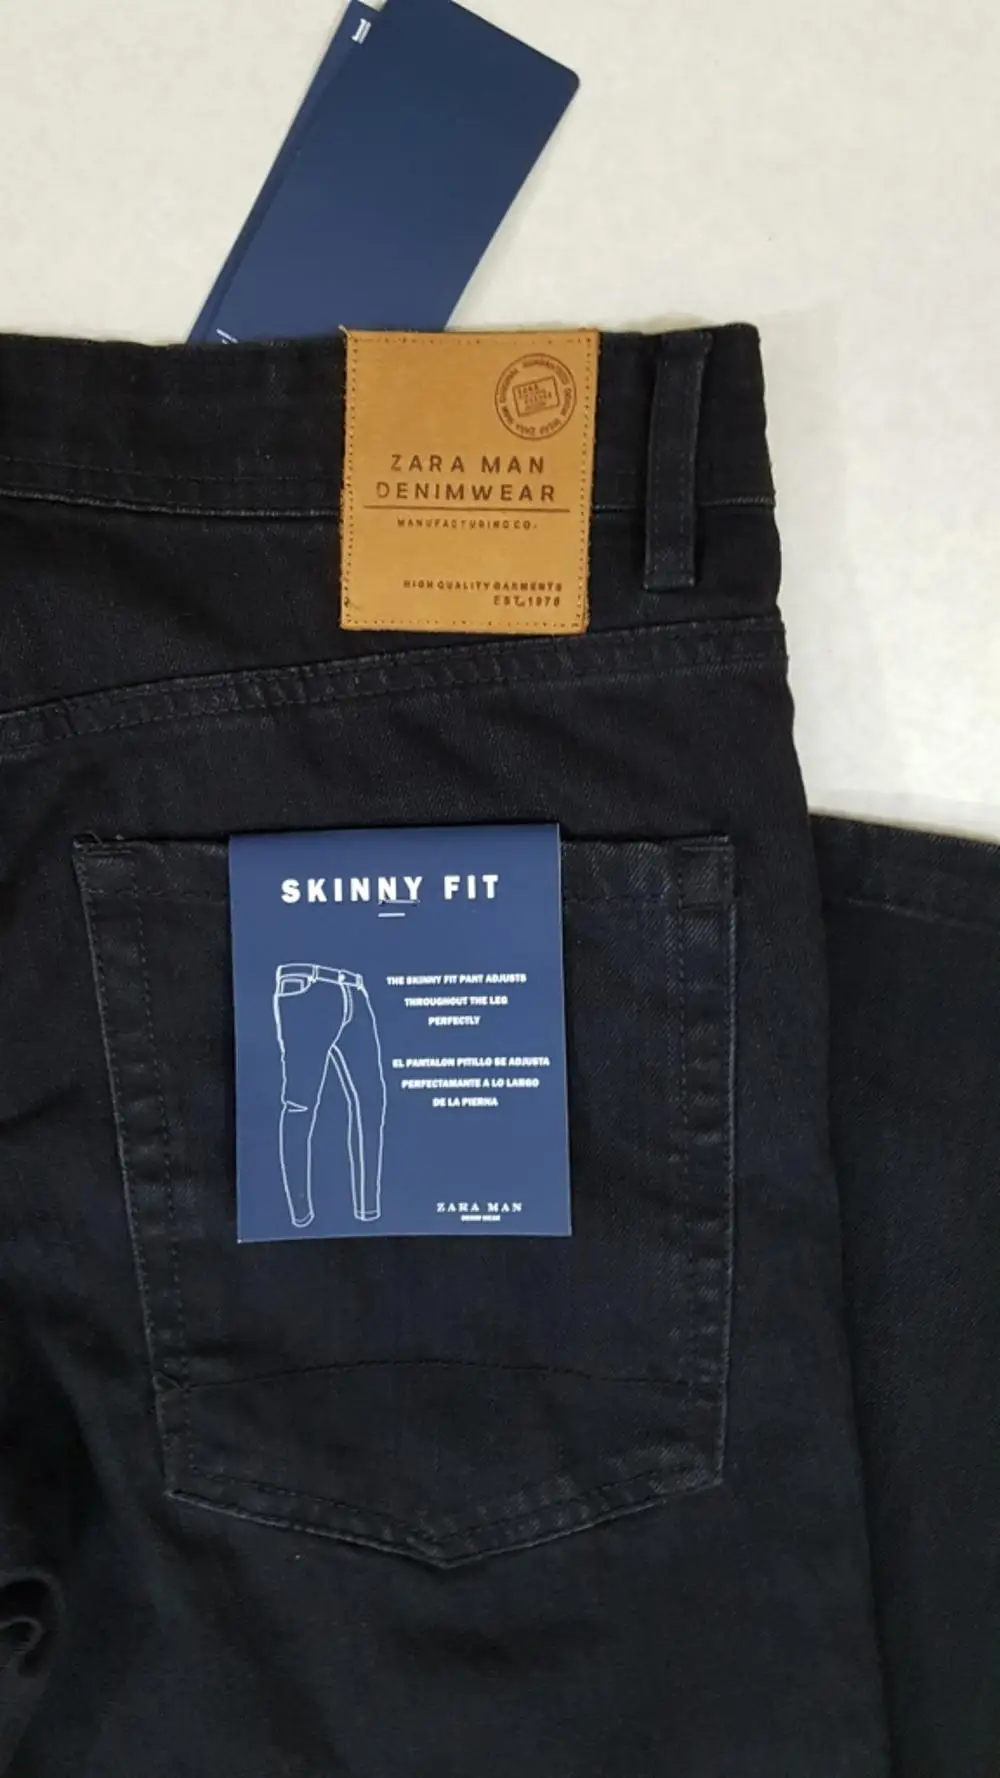 Недорогие склады Бангладеш/Отправка отмены 100% экспортное качество, складские джинсы для мужчин, разработанные в 2018 году